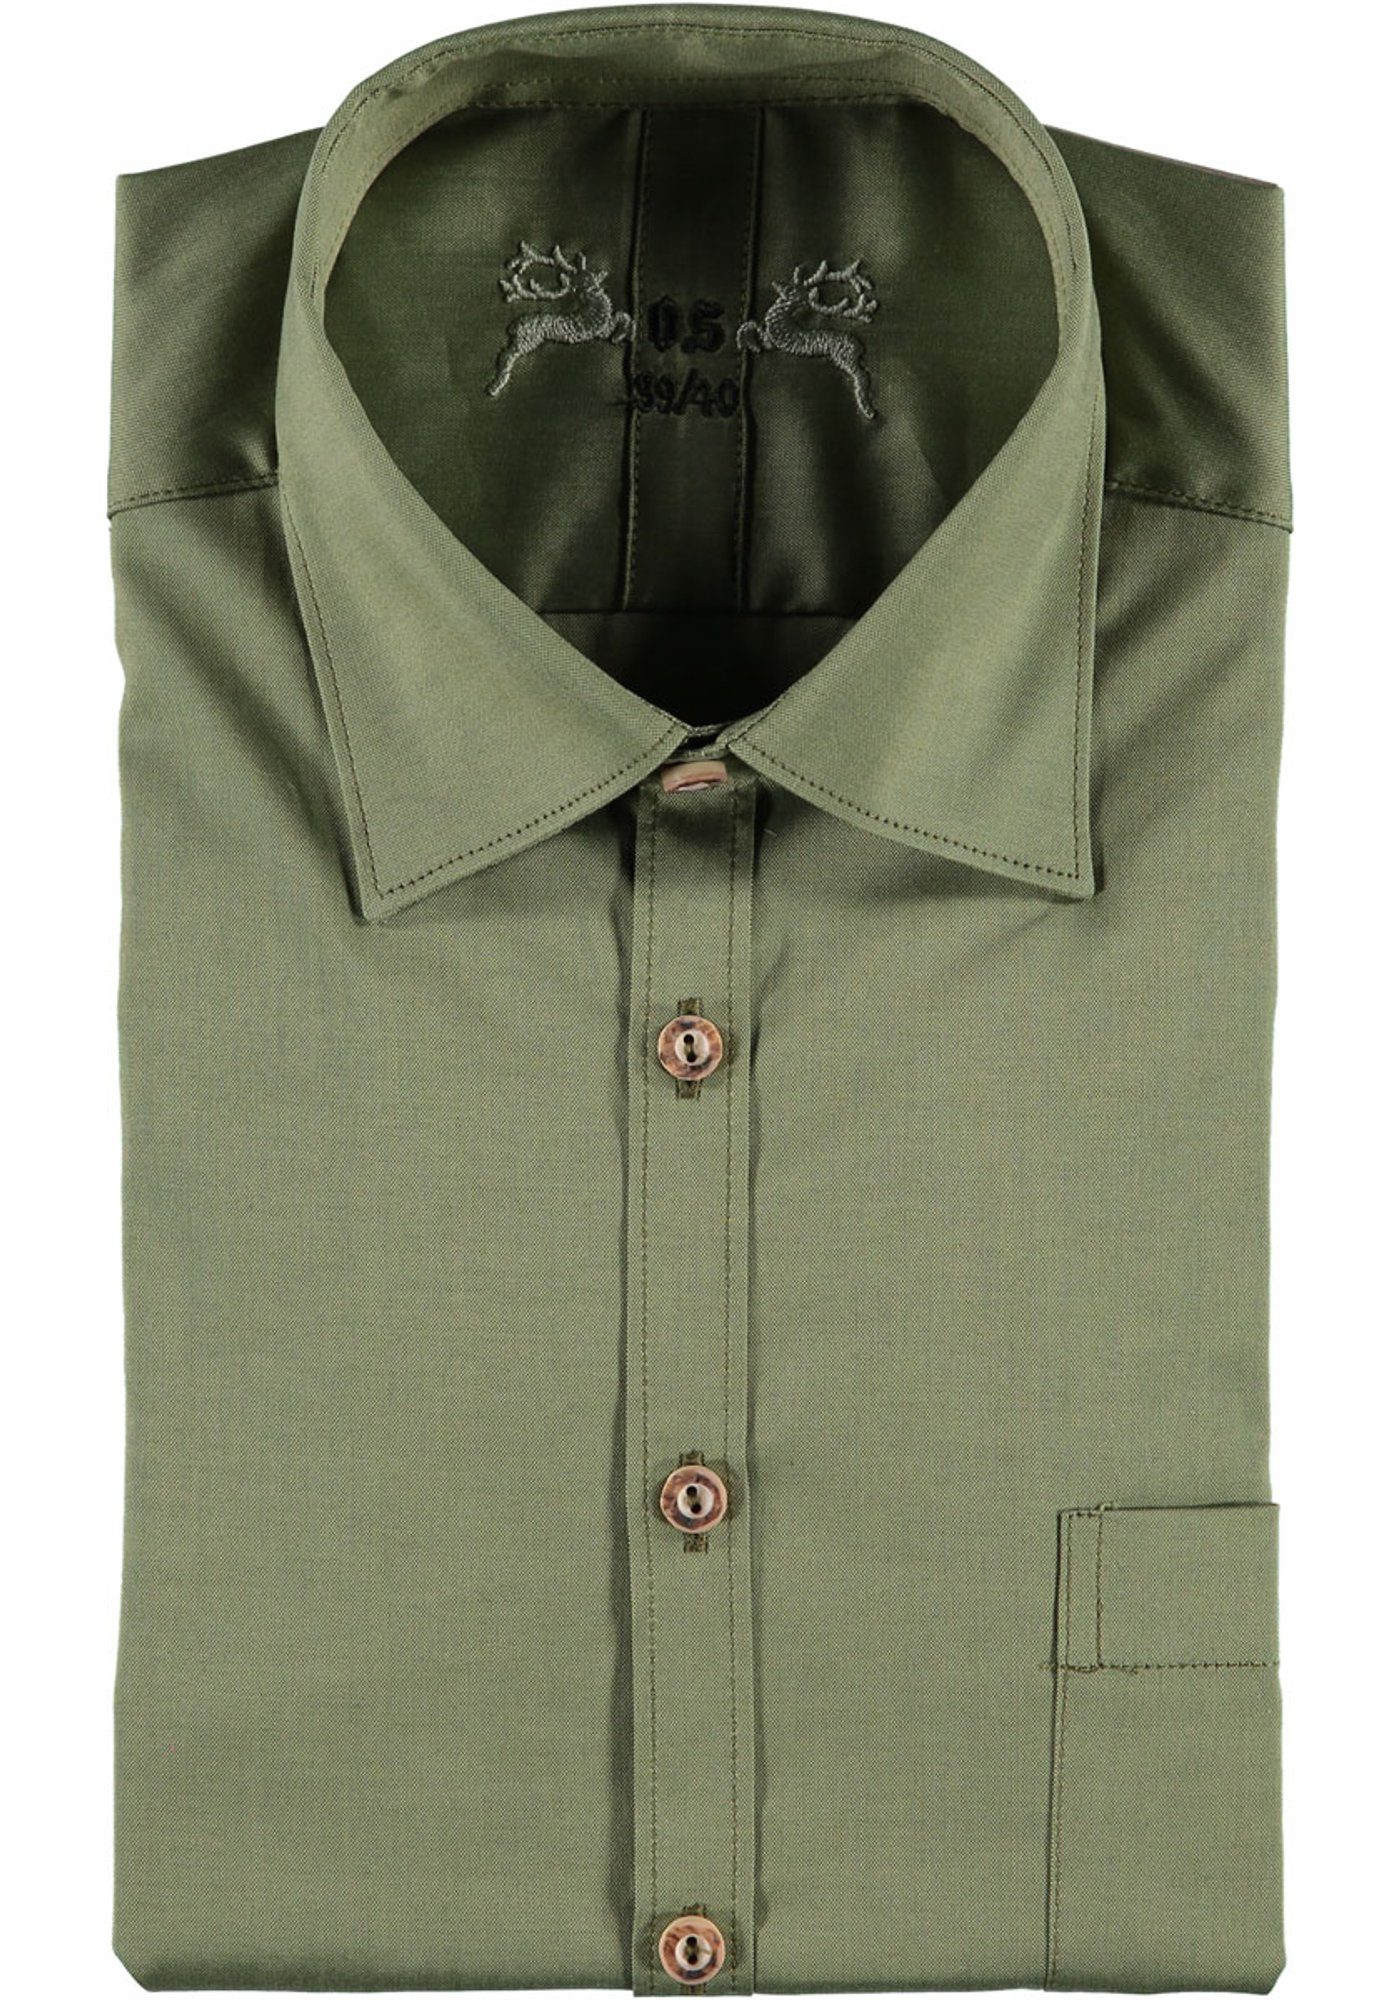 OS-Trachten Trachtenhemd Addoya Herren Langarmhemd mit aufgesetzter Brusttasche khaki/schlamm